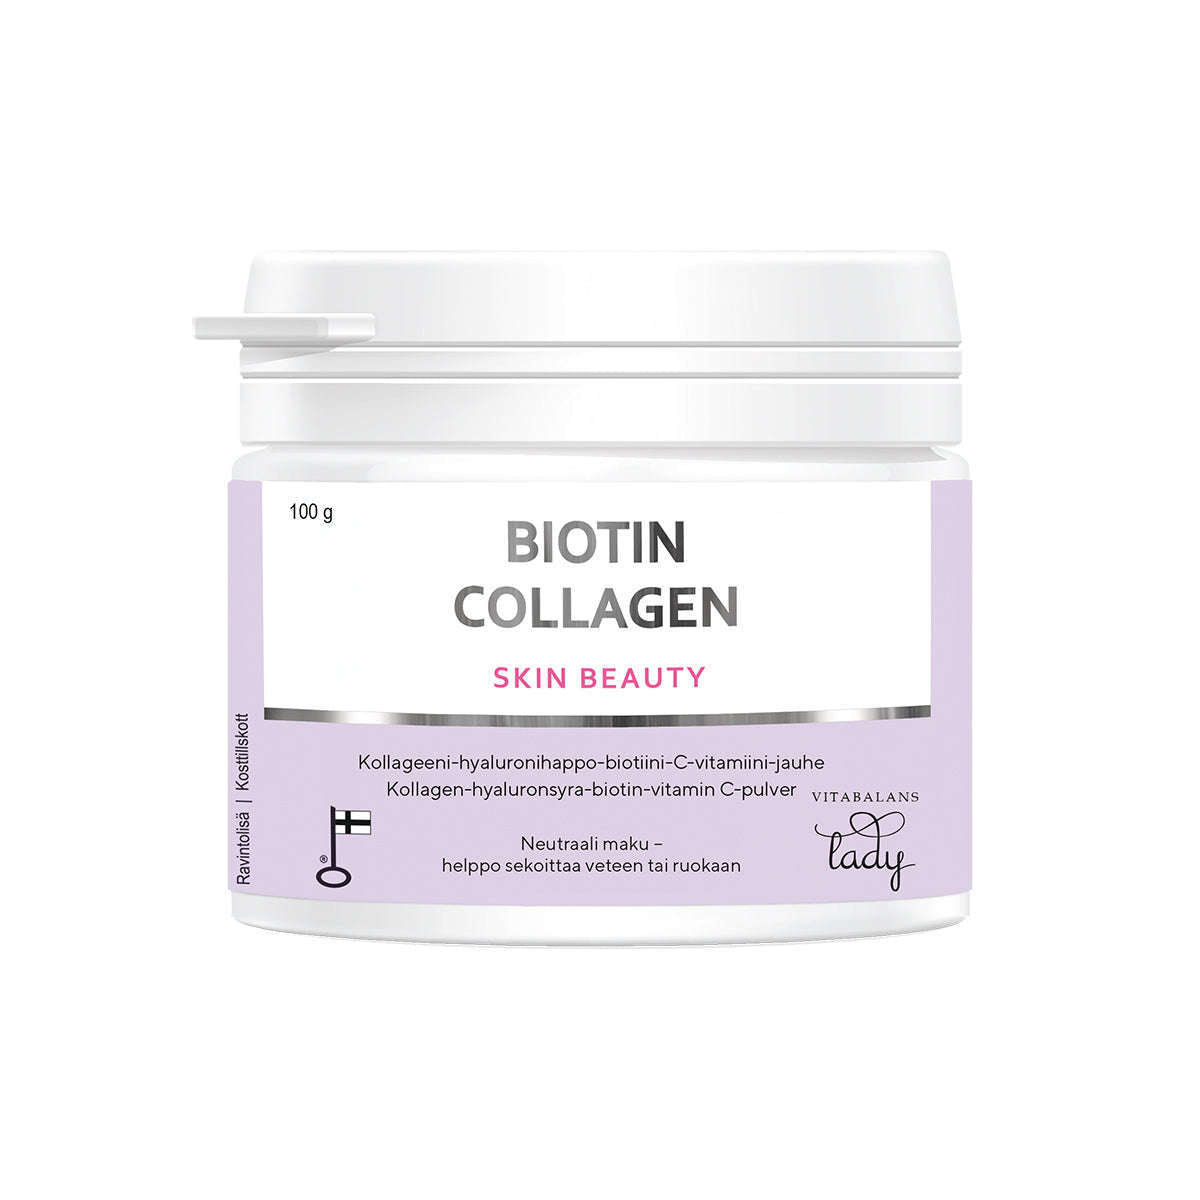 Biotin Collagen Skin Beauty Powder